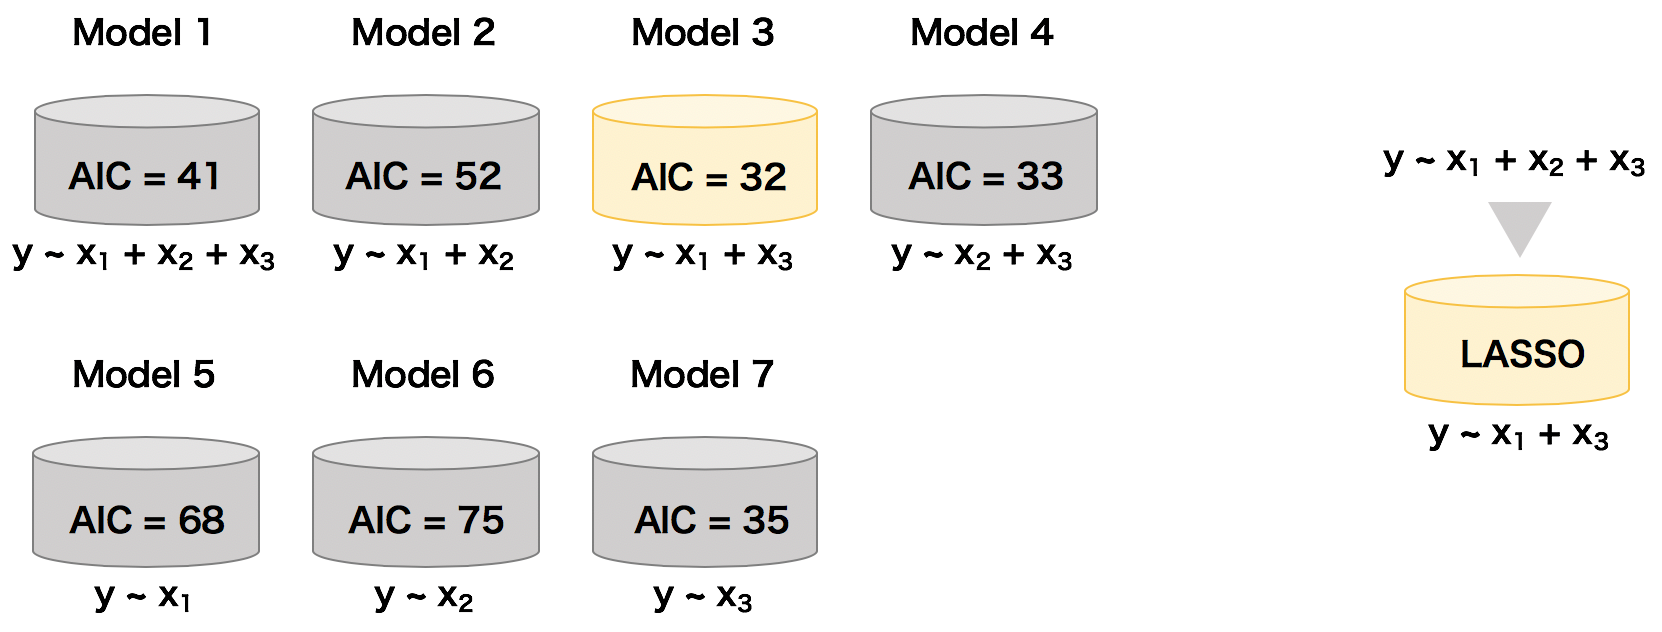 LASSOは変数選択とモデル構築を同時に行えて、従来の手法よりも効率的にモデリングすることができる。